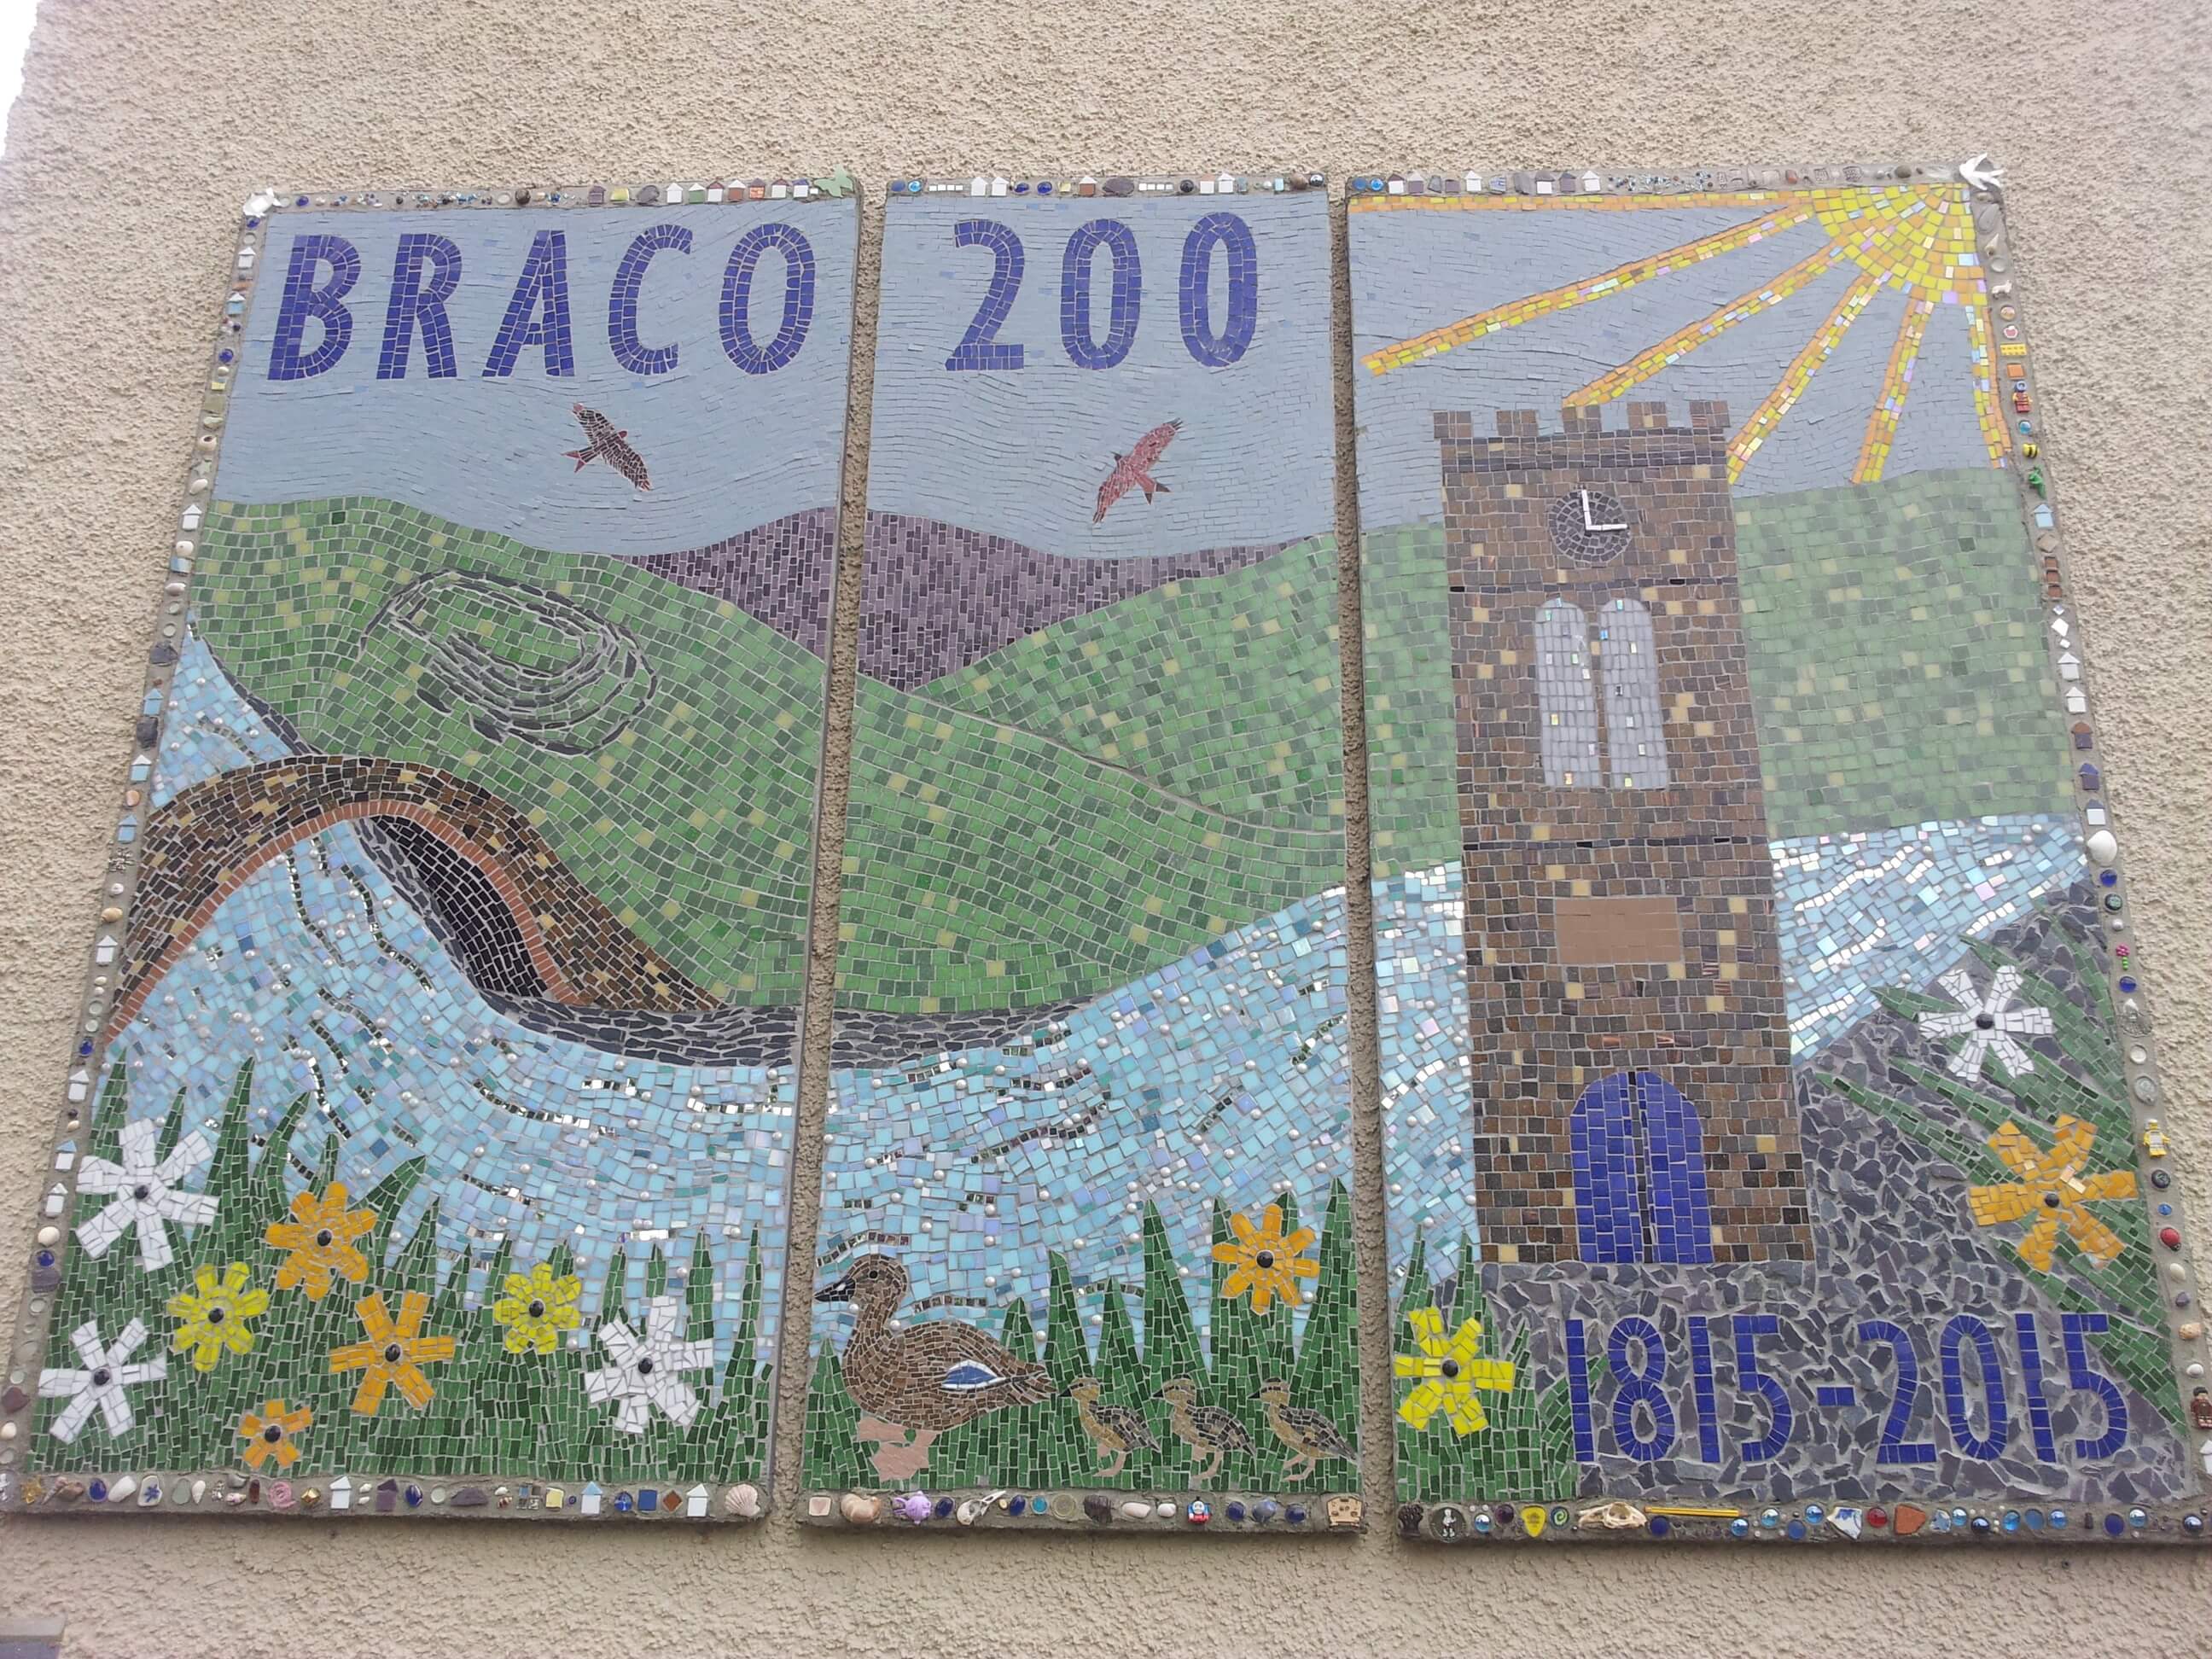 Braco 200 school mosaic